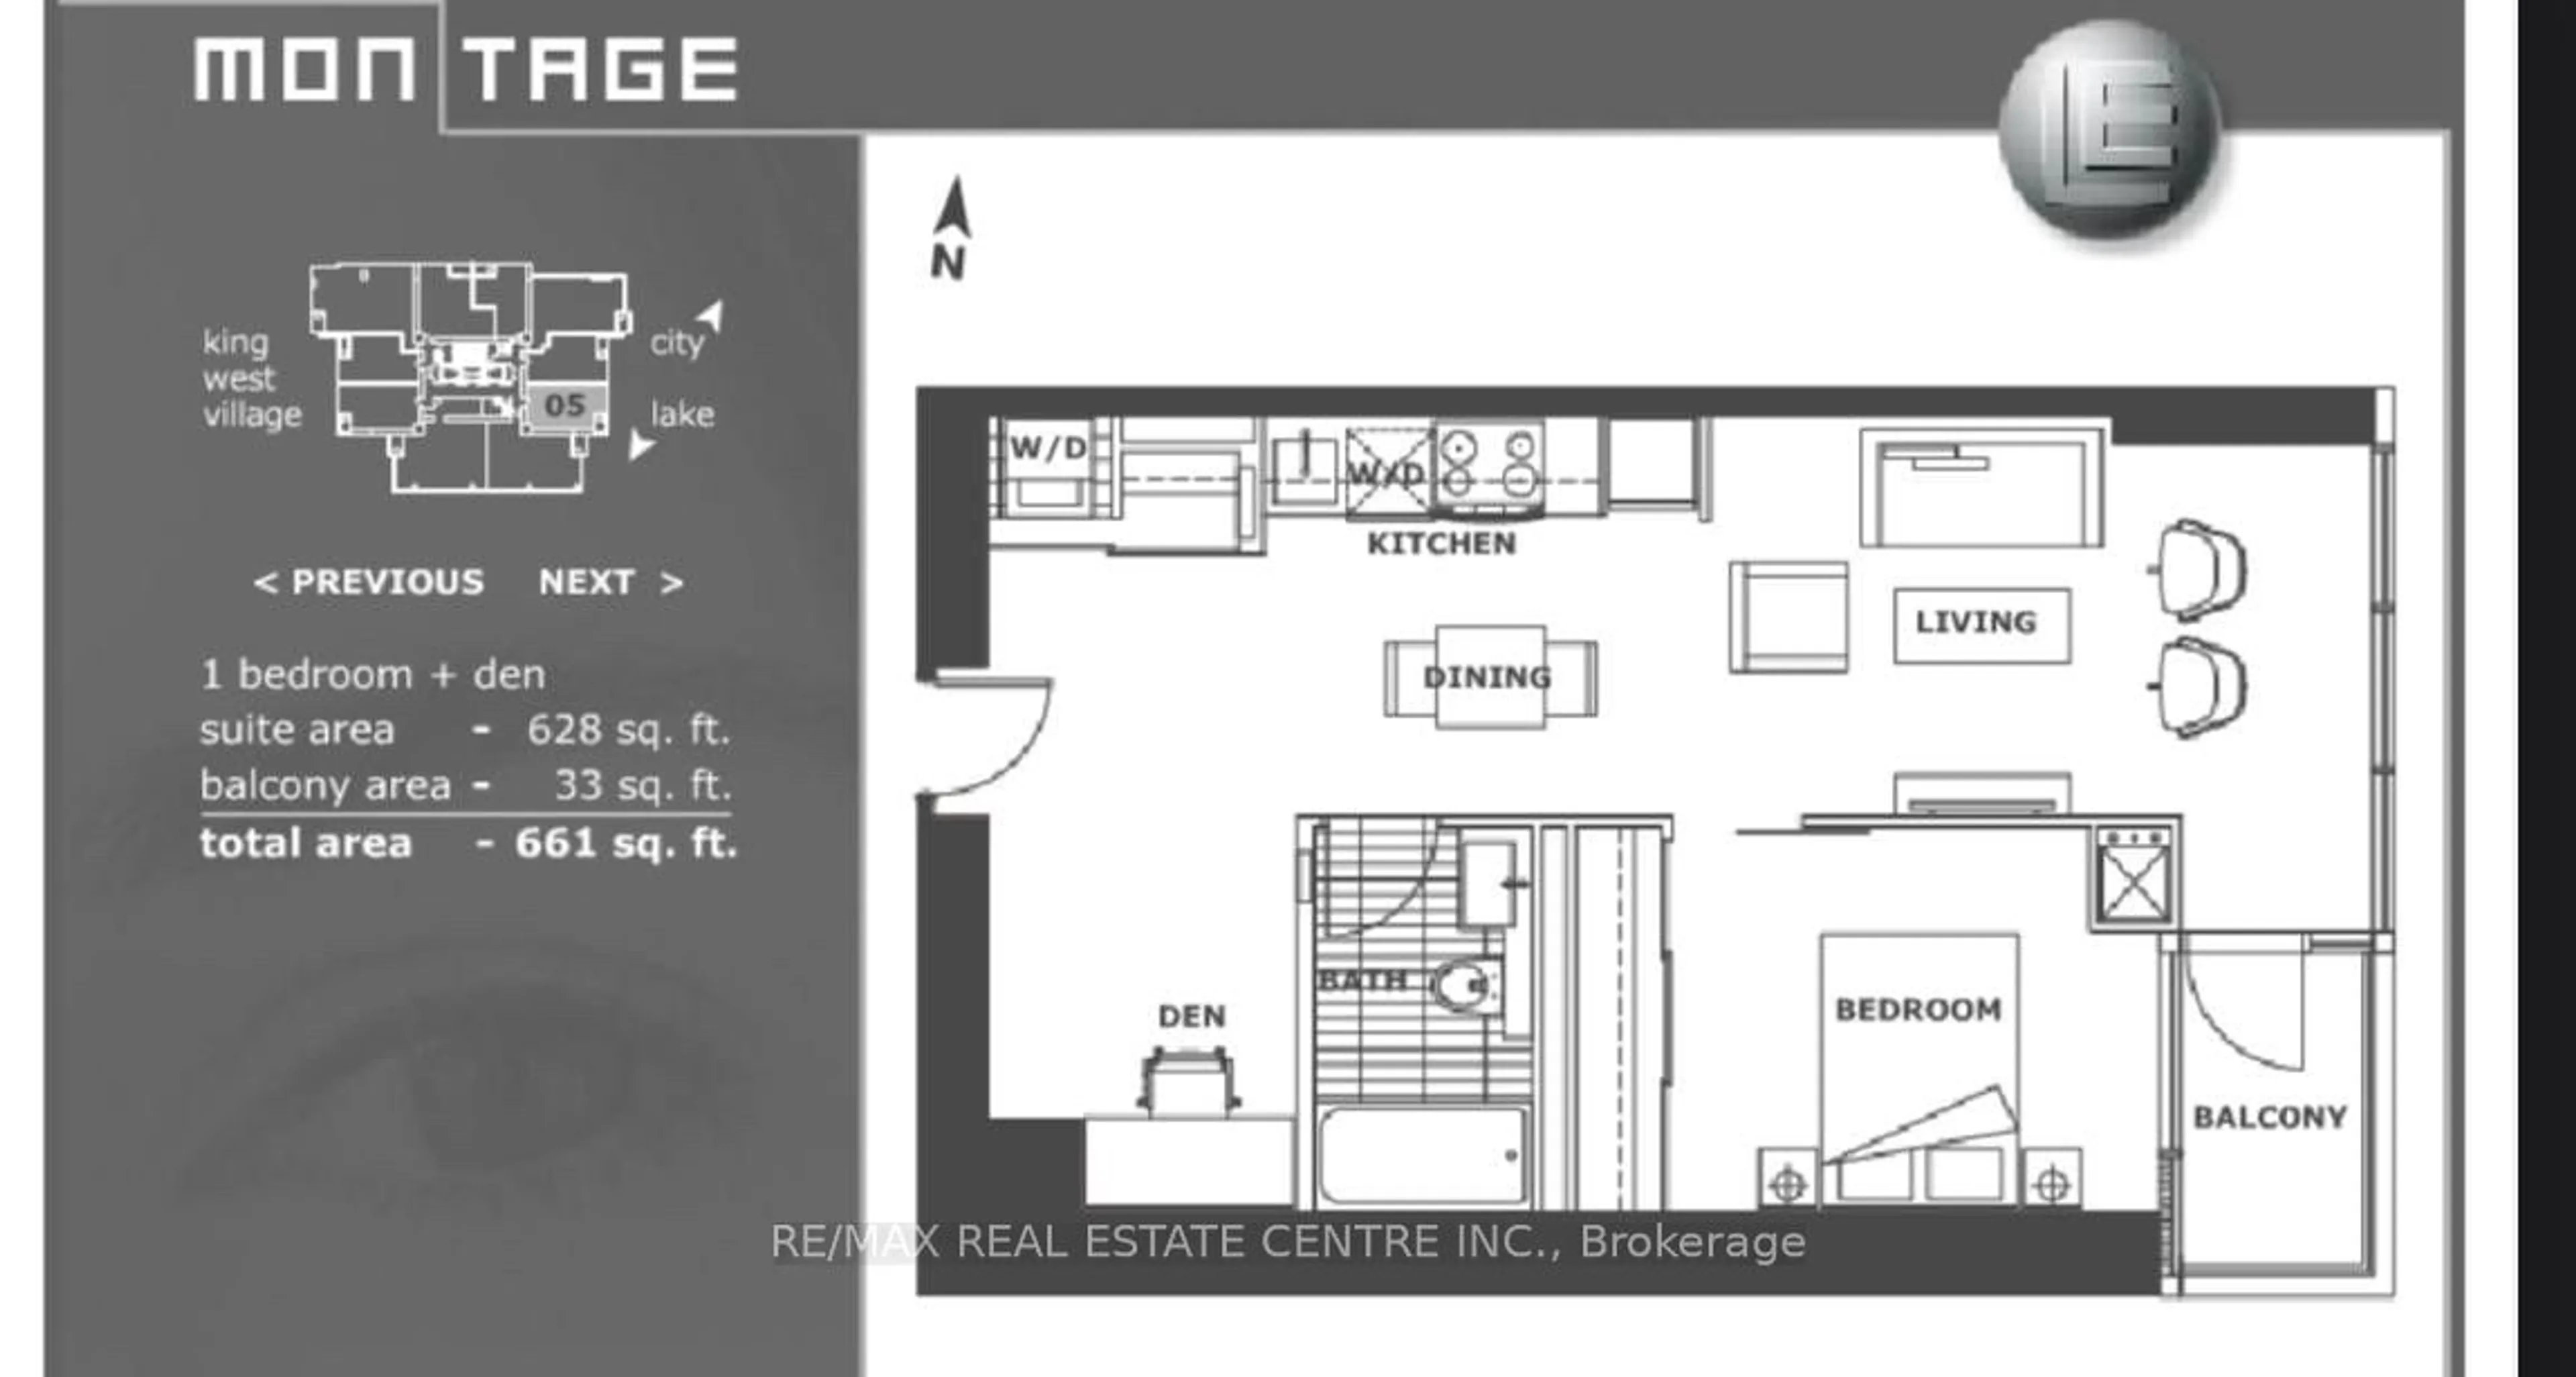 Floor plan for 25 Telegram Mews #4105, Toronto Ontario M5V 3Z1